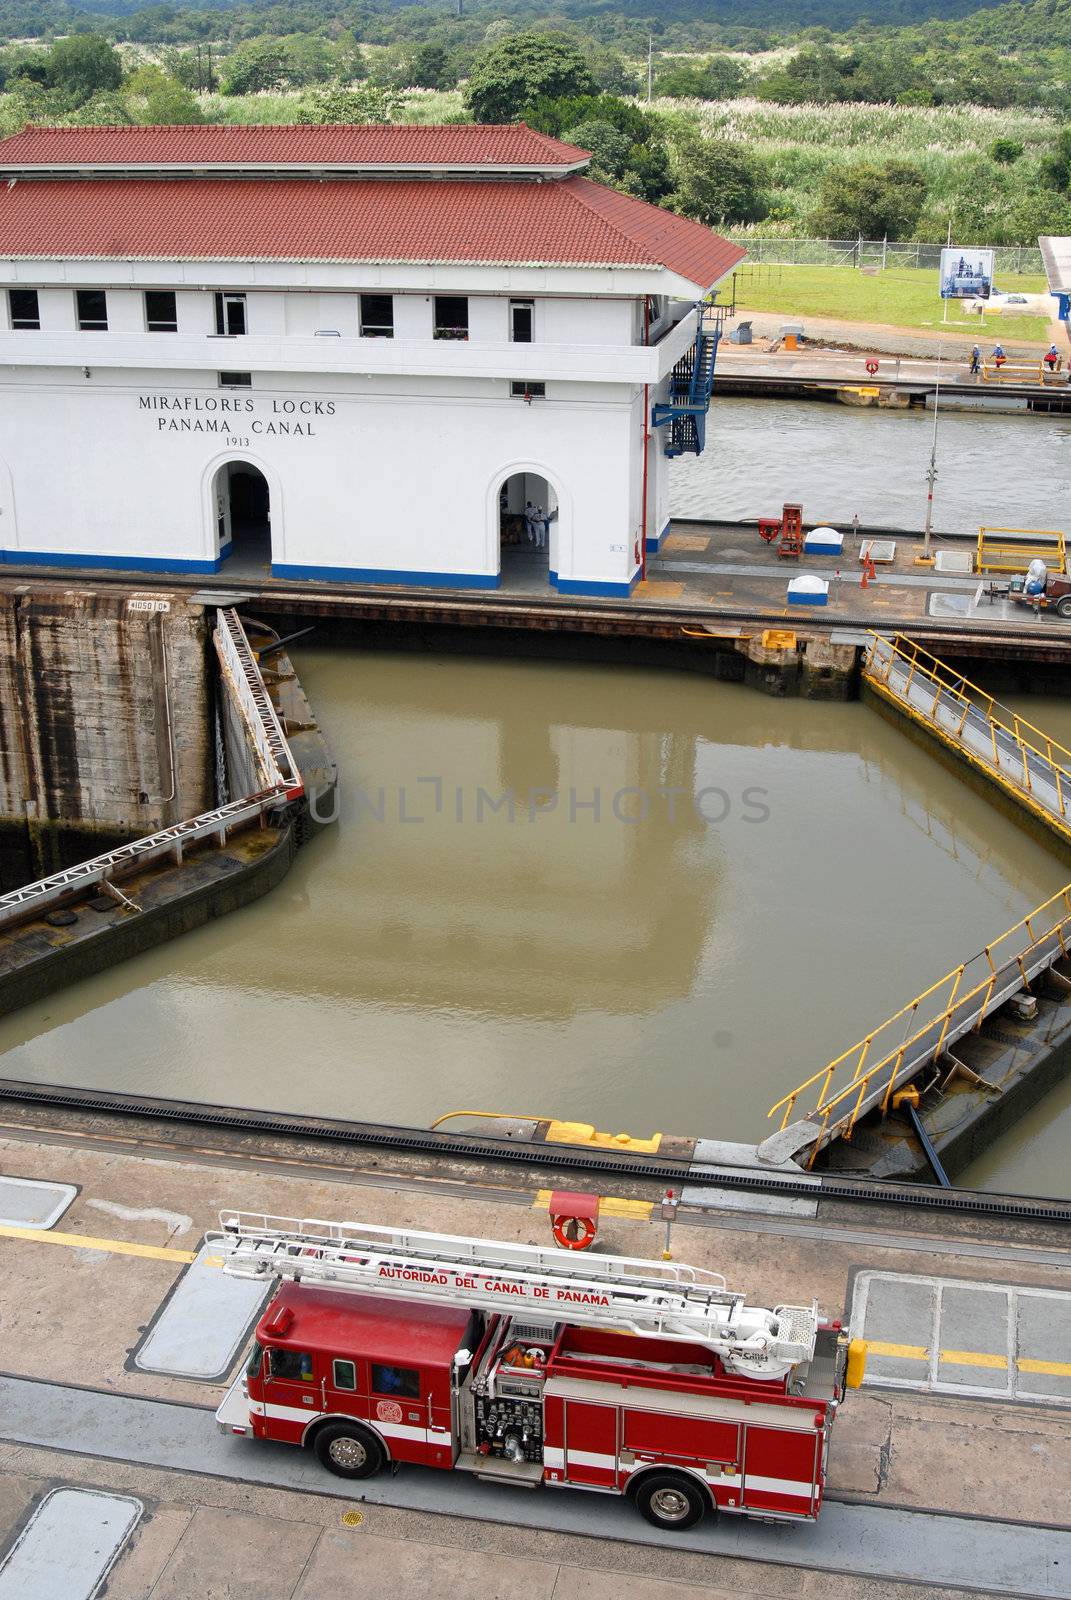 Miraflores Locks at Panama Canal by cienpies